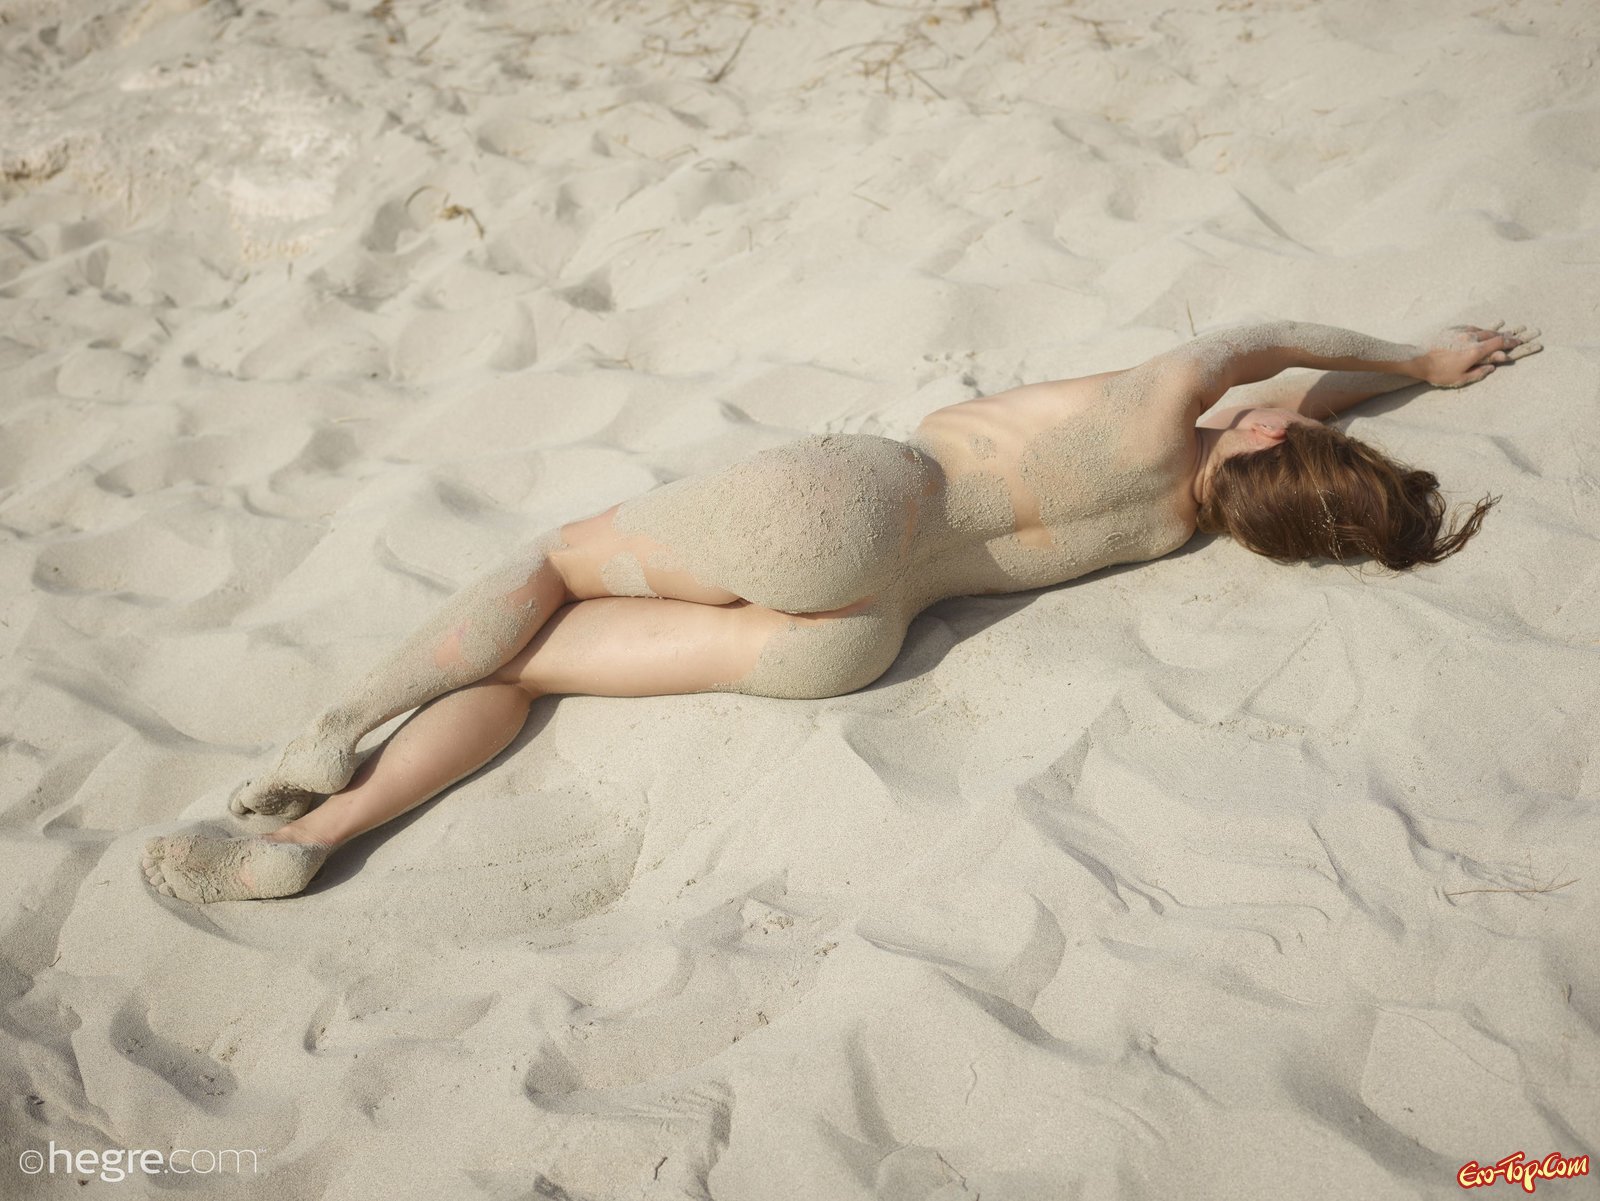 Возбужденная раздетая модель измазалась в пляже на берегу моря